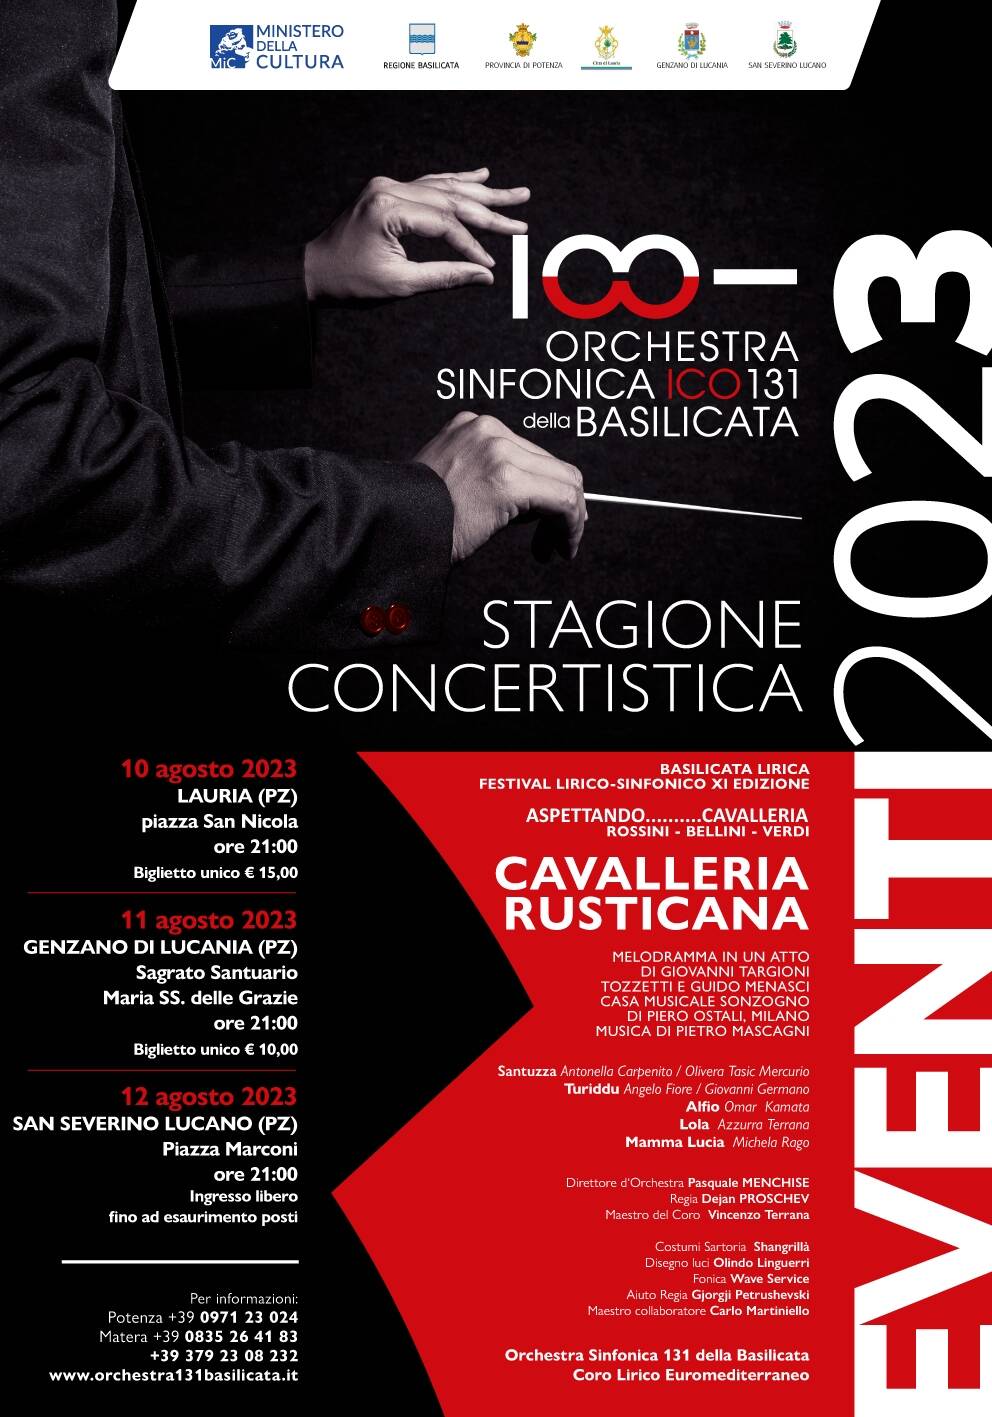 L’Orchestra sinfonica 131 della Basilicata in tournée con Cavalleria Rusticana